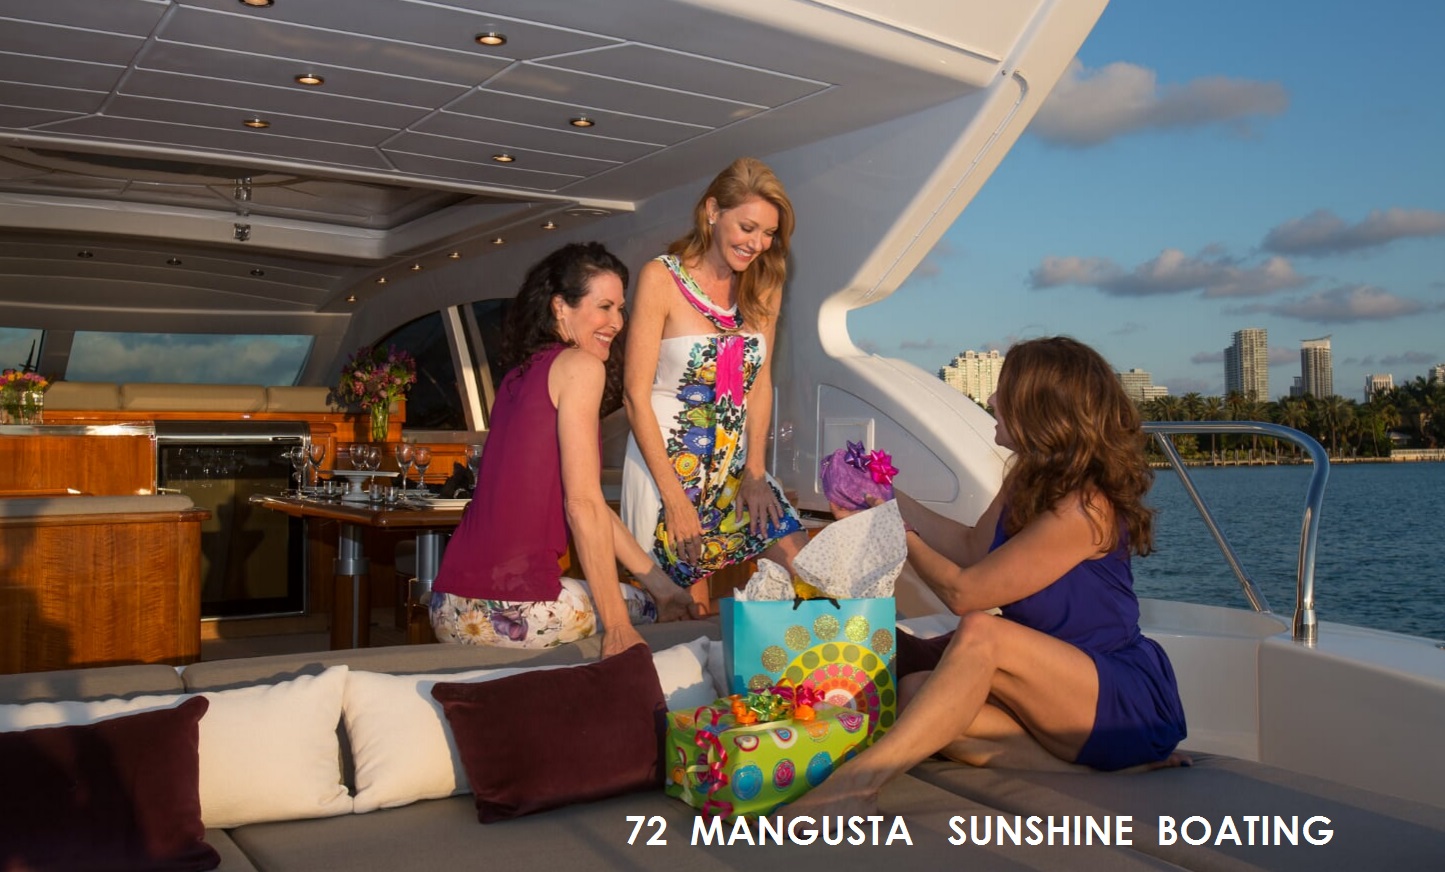 sunshine-boating-manusta-72-i